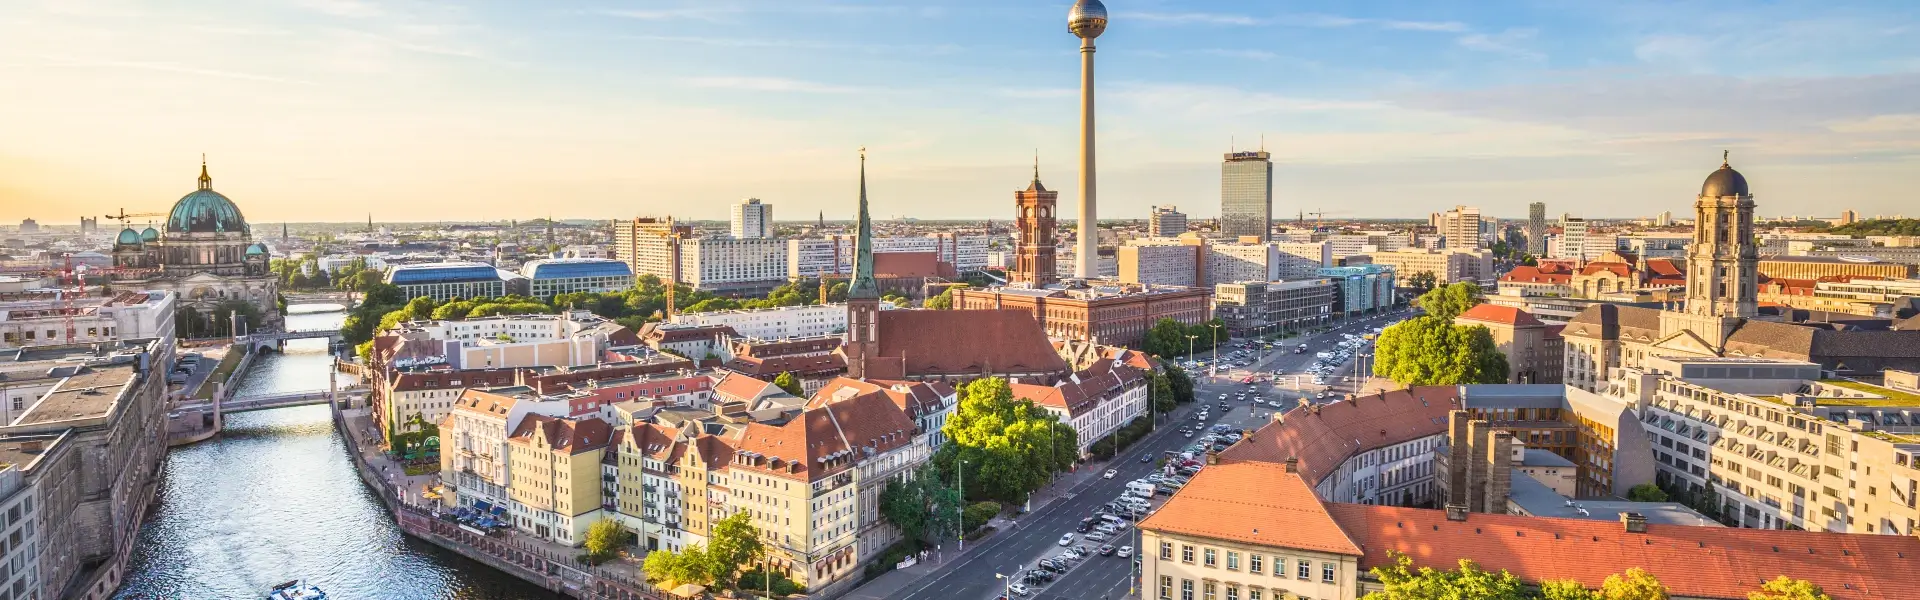 כל מה שצריך לדעת על טיול בברלין